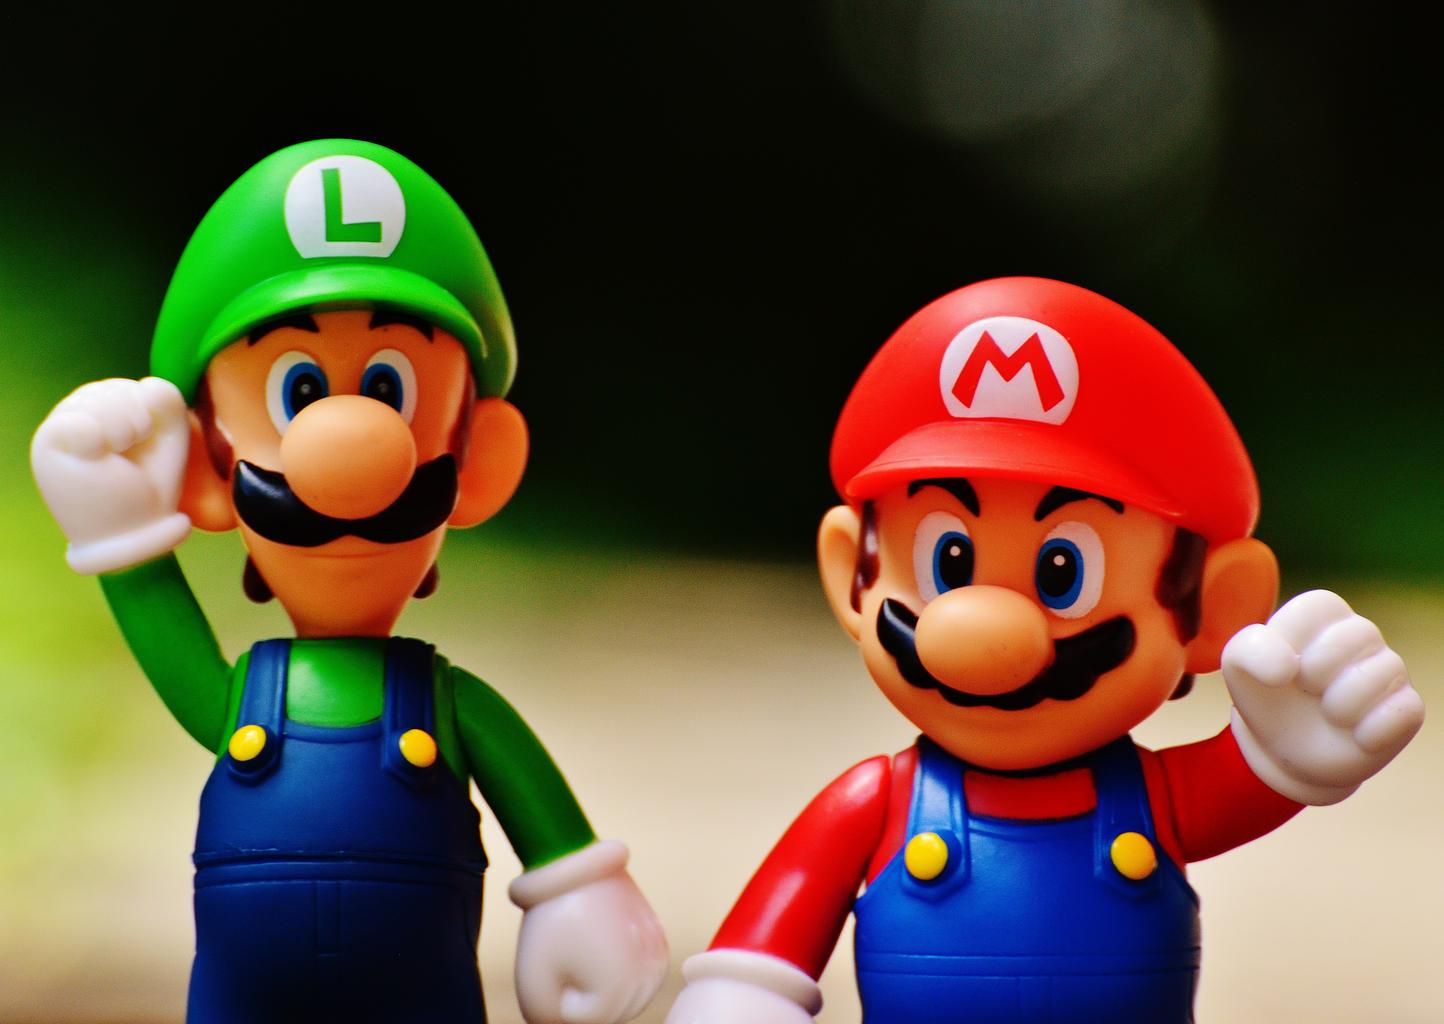 Mario and Luigi Figures